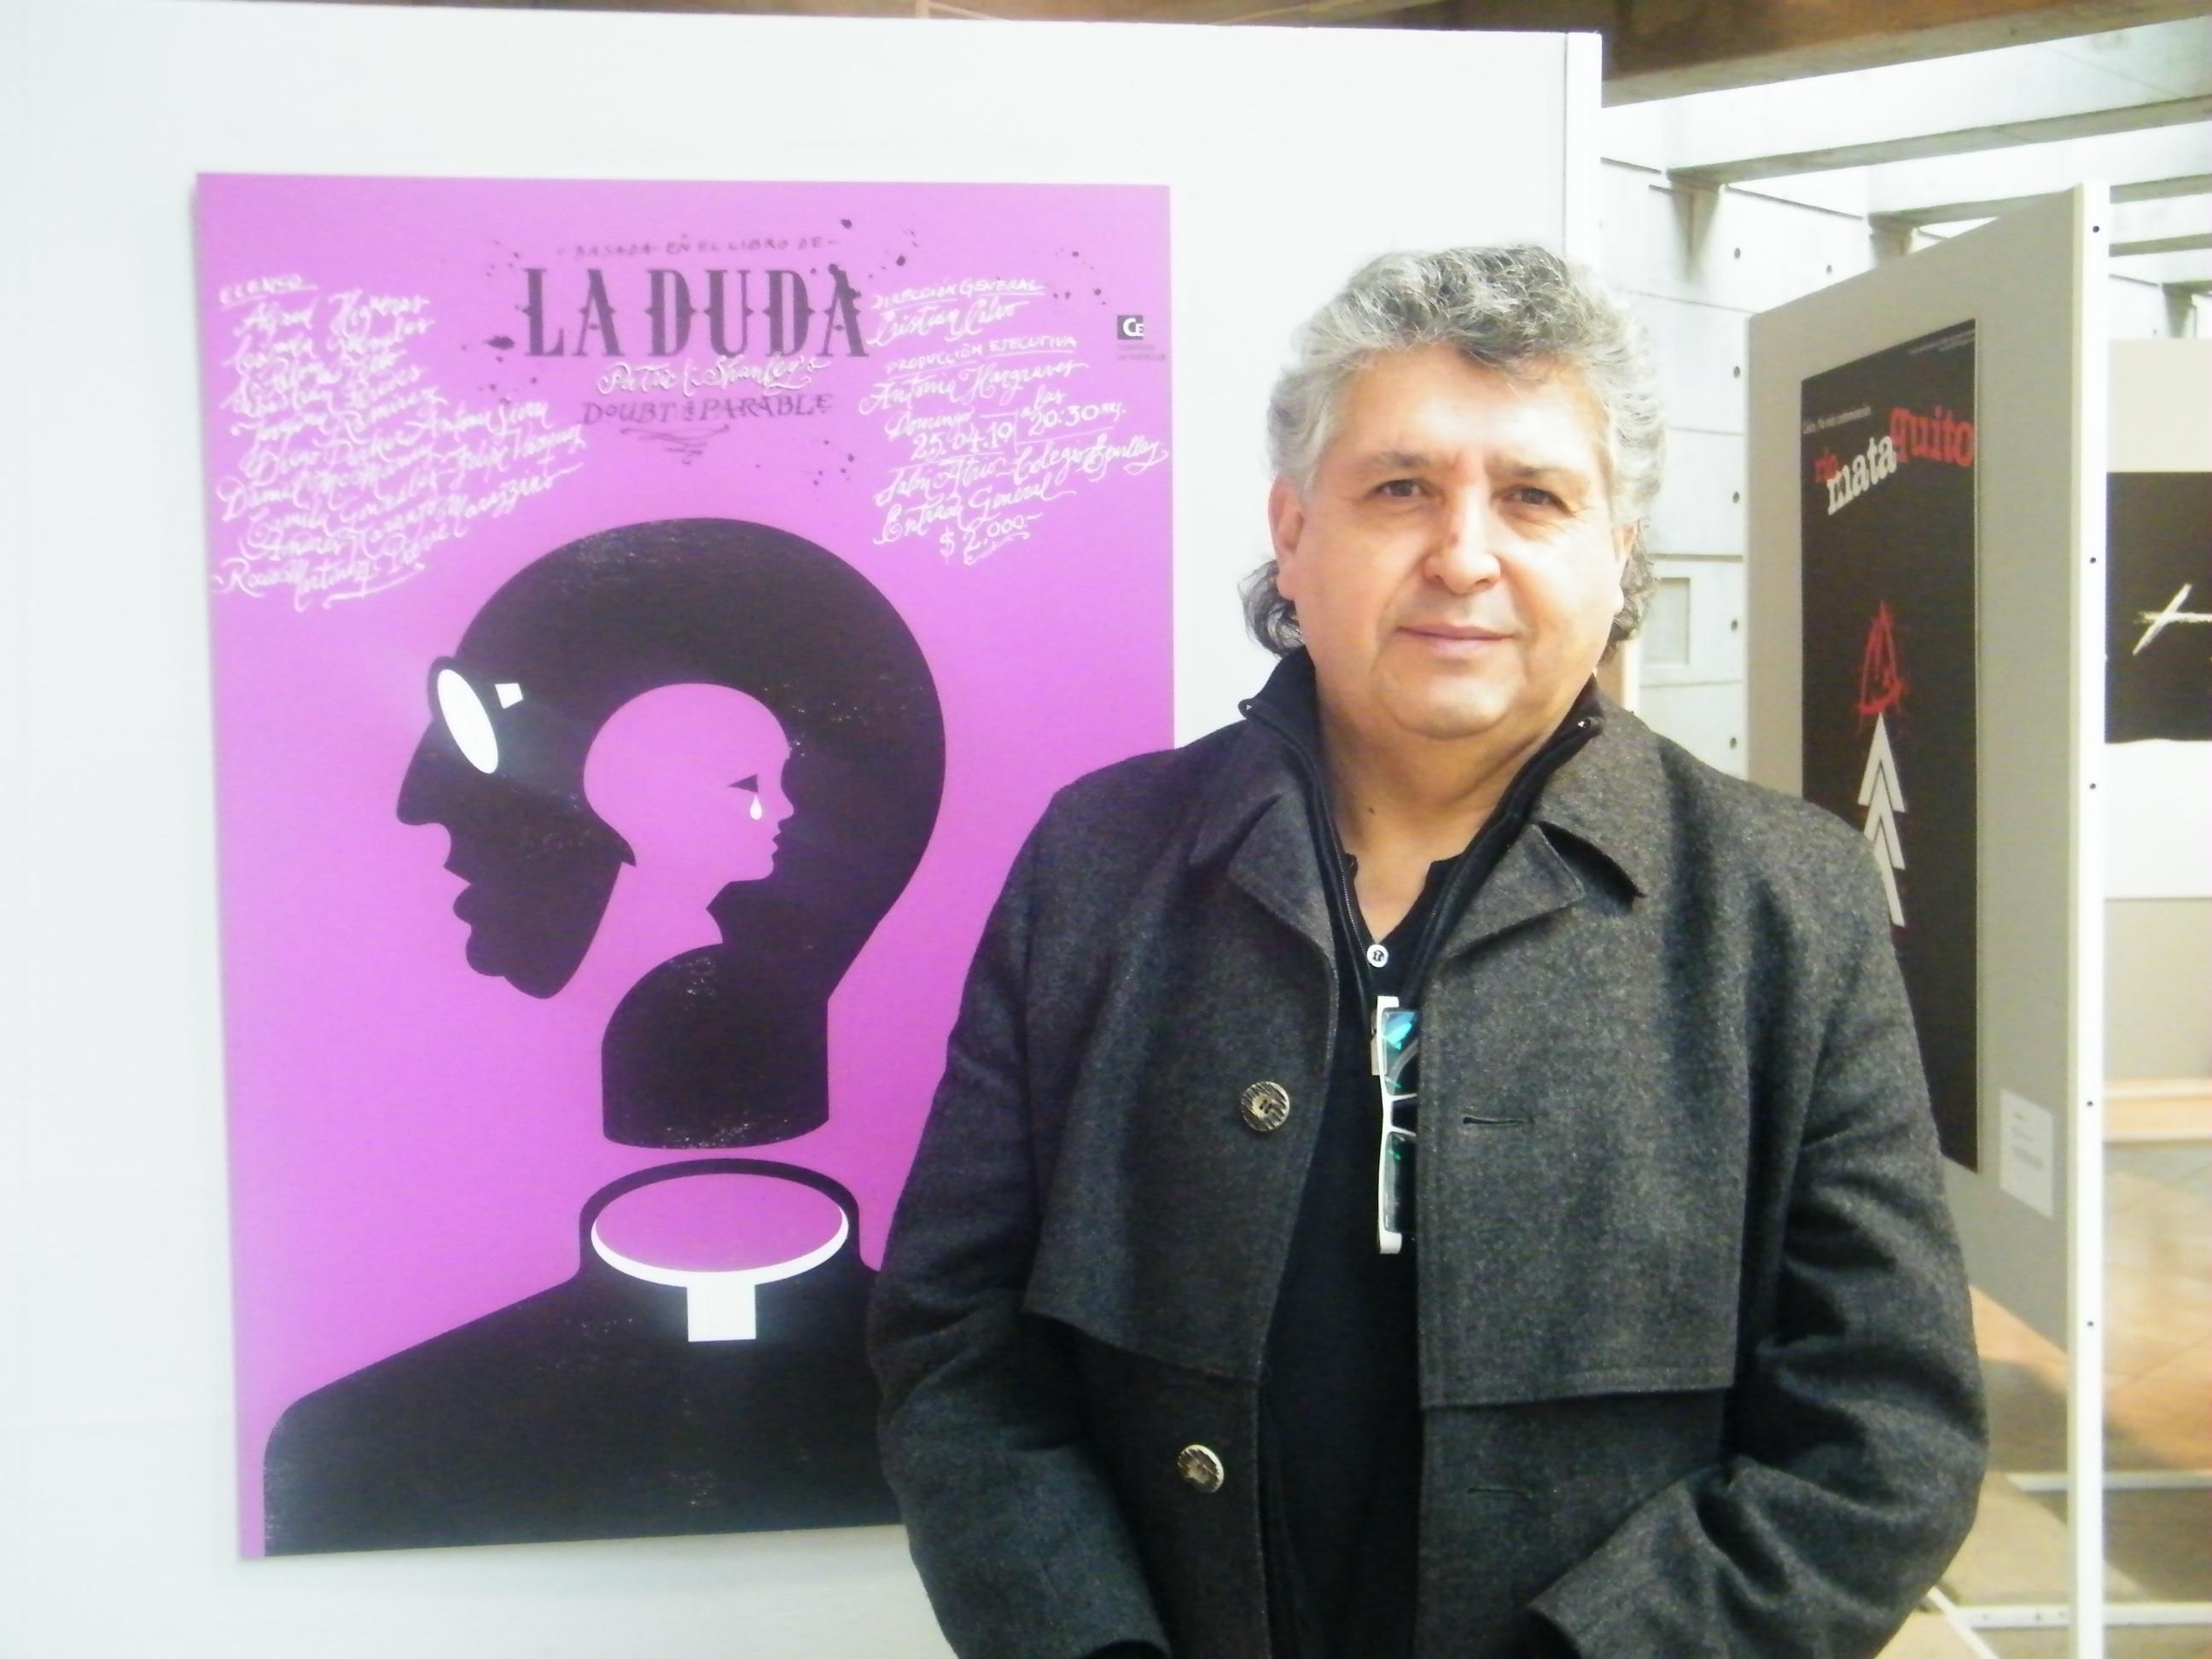 El profesor Julián Naranjo junto al afiche de la obra "La Duda", que ha generado variadas interpretaciones.